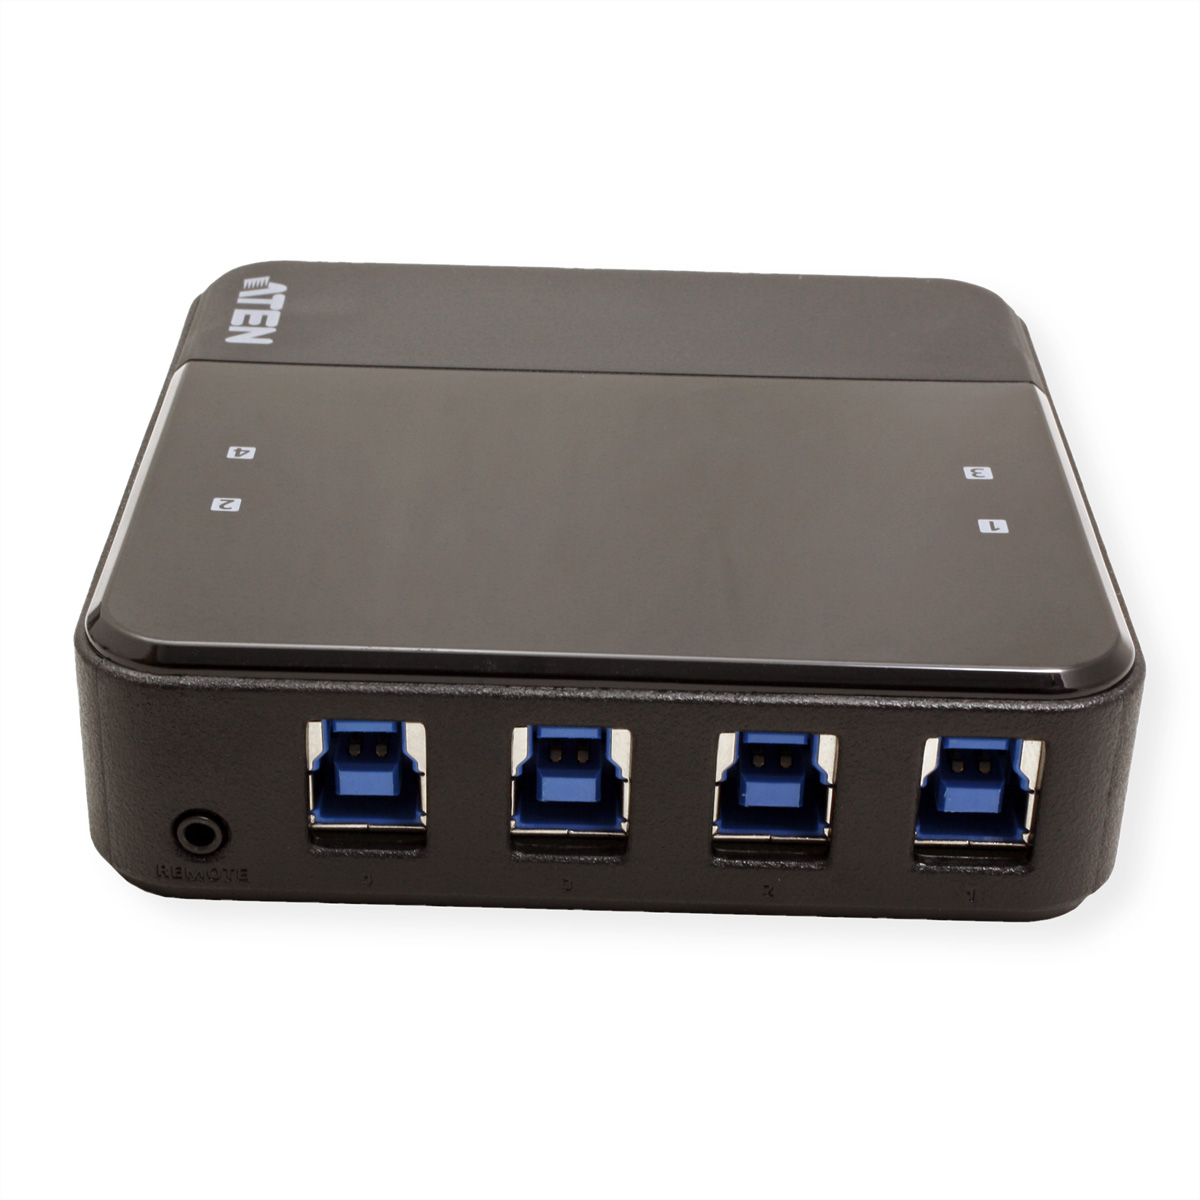 ATEN US3344 automatisch, Switchbox, 4-Port schwarz USB-C zu Sharing, USB